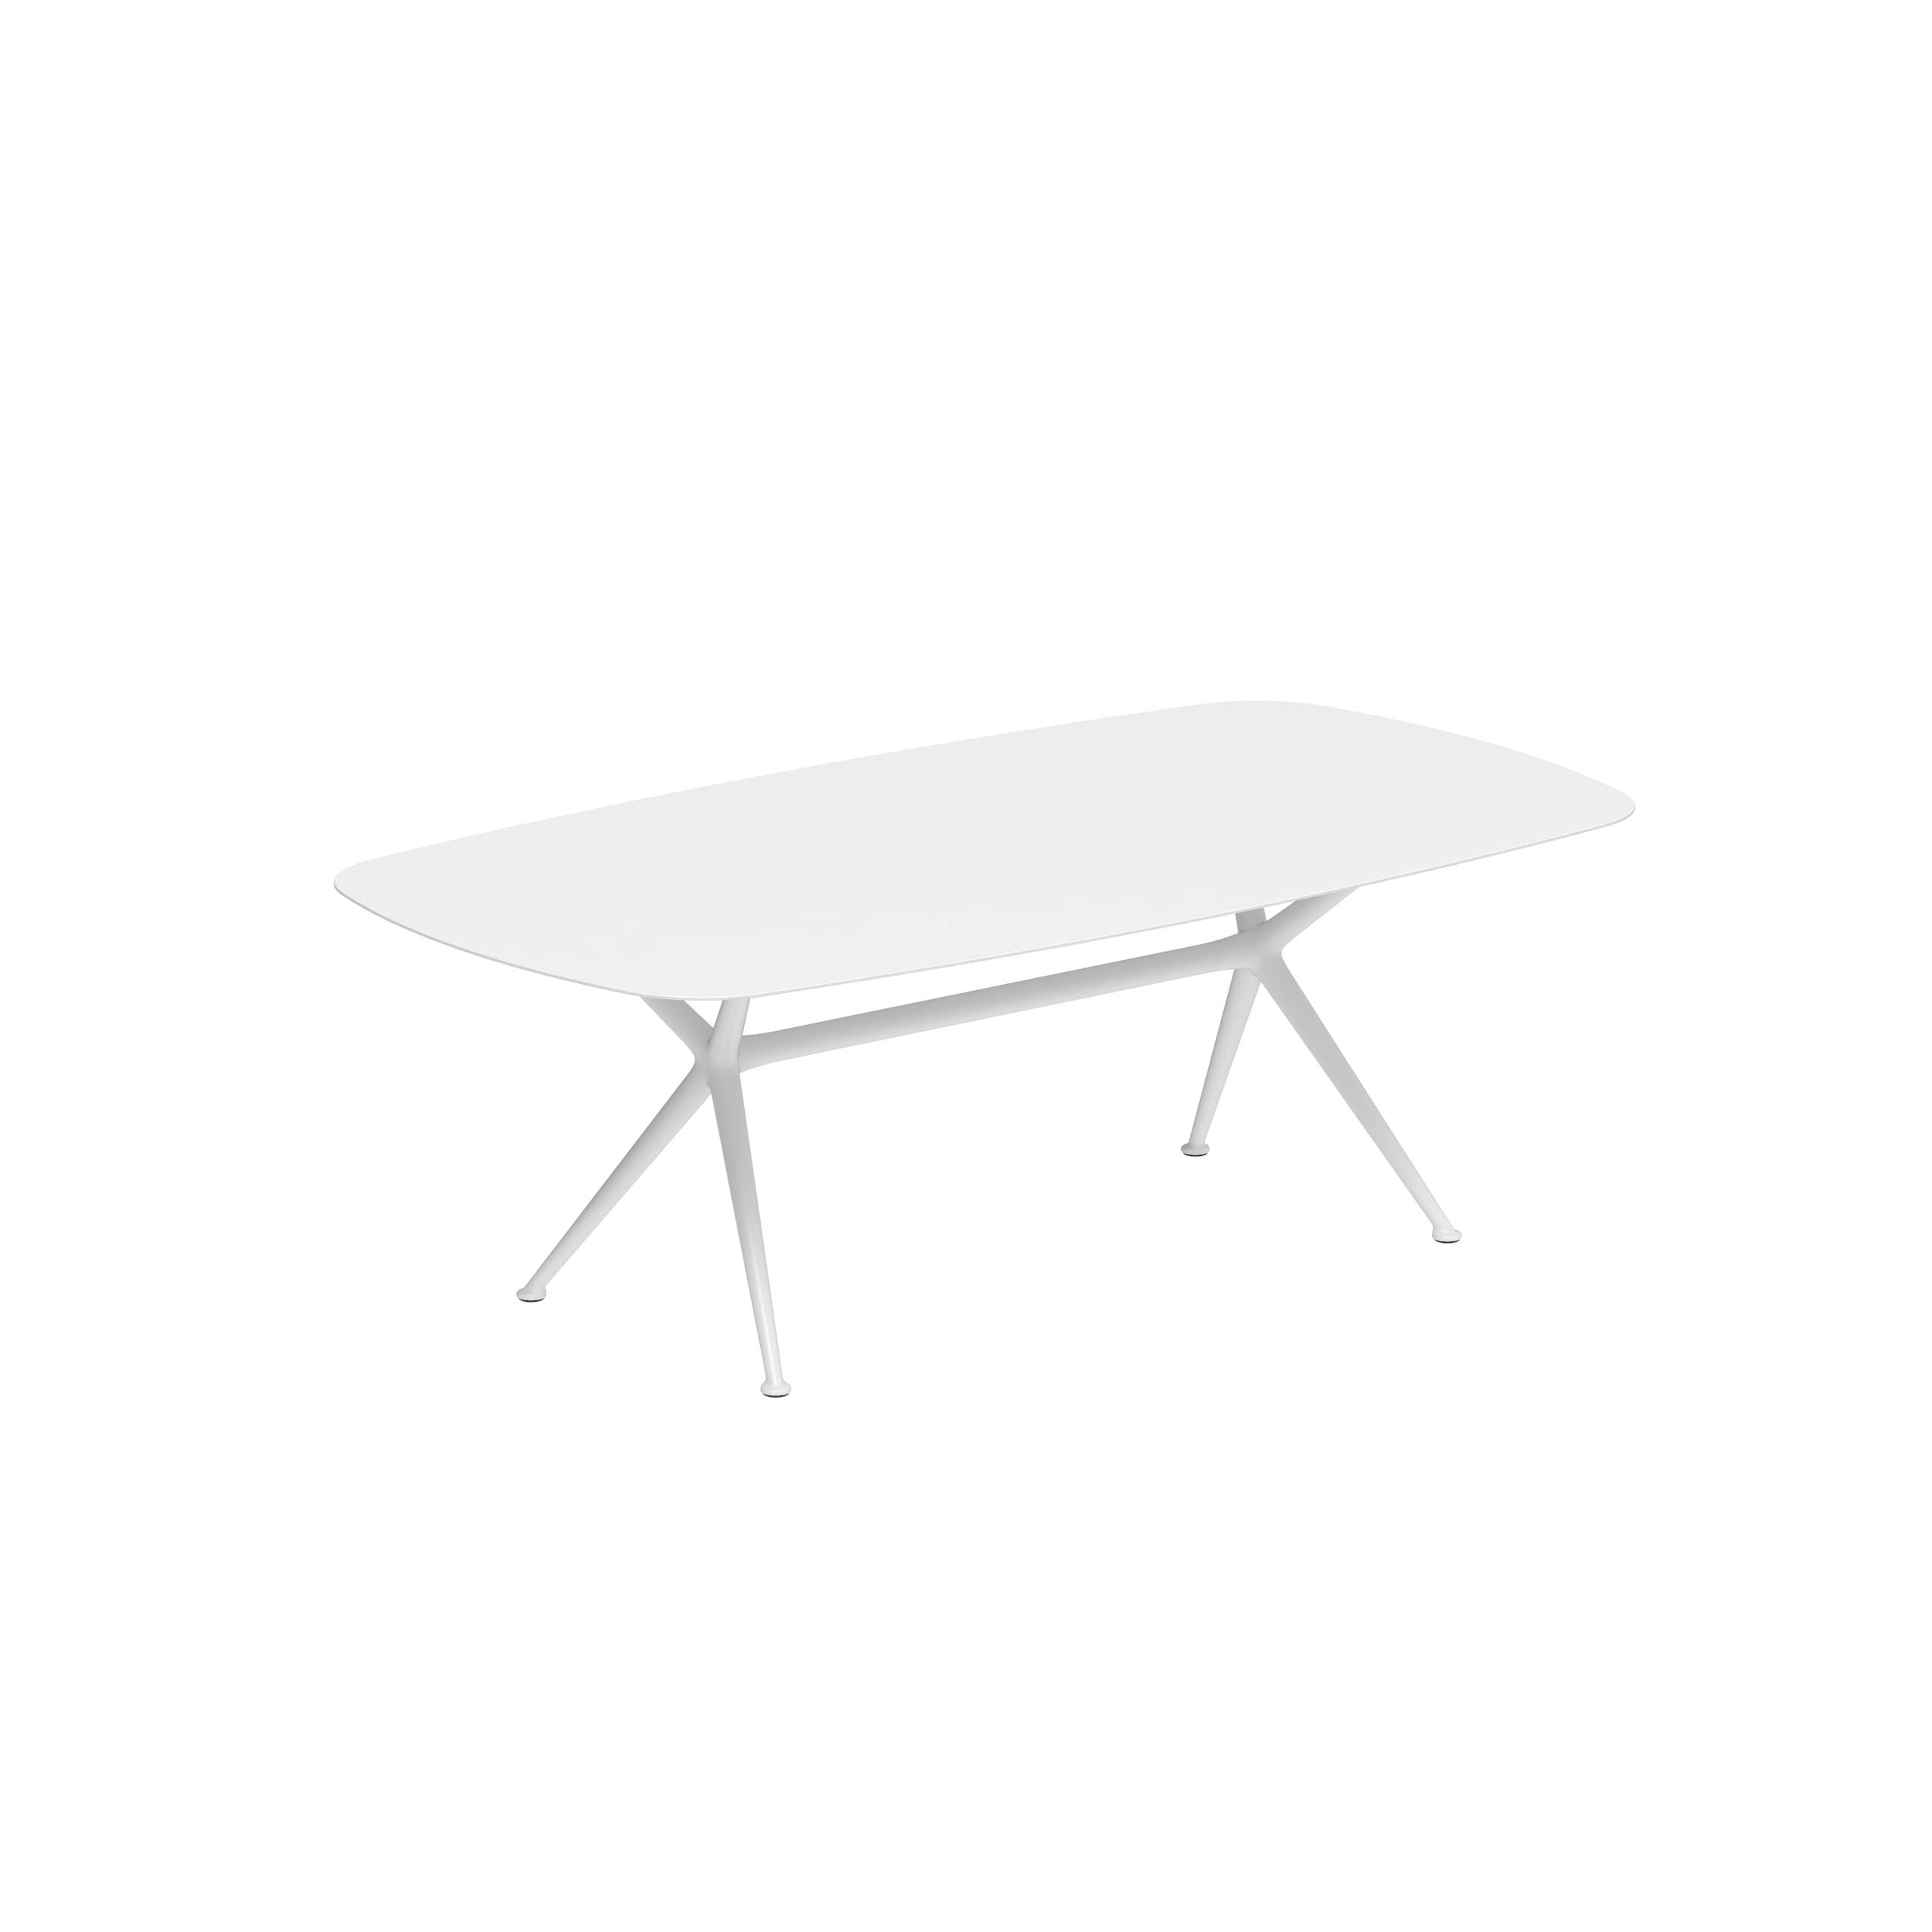 Exes Table 220x120cm Alu Legs White - Table Top Ceramic White